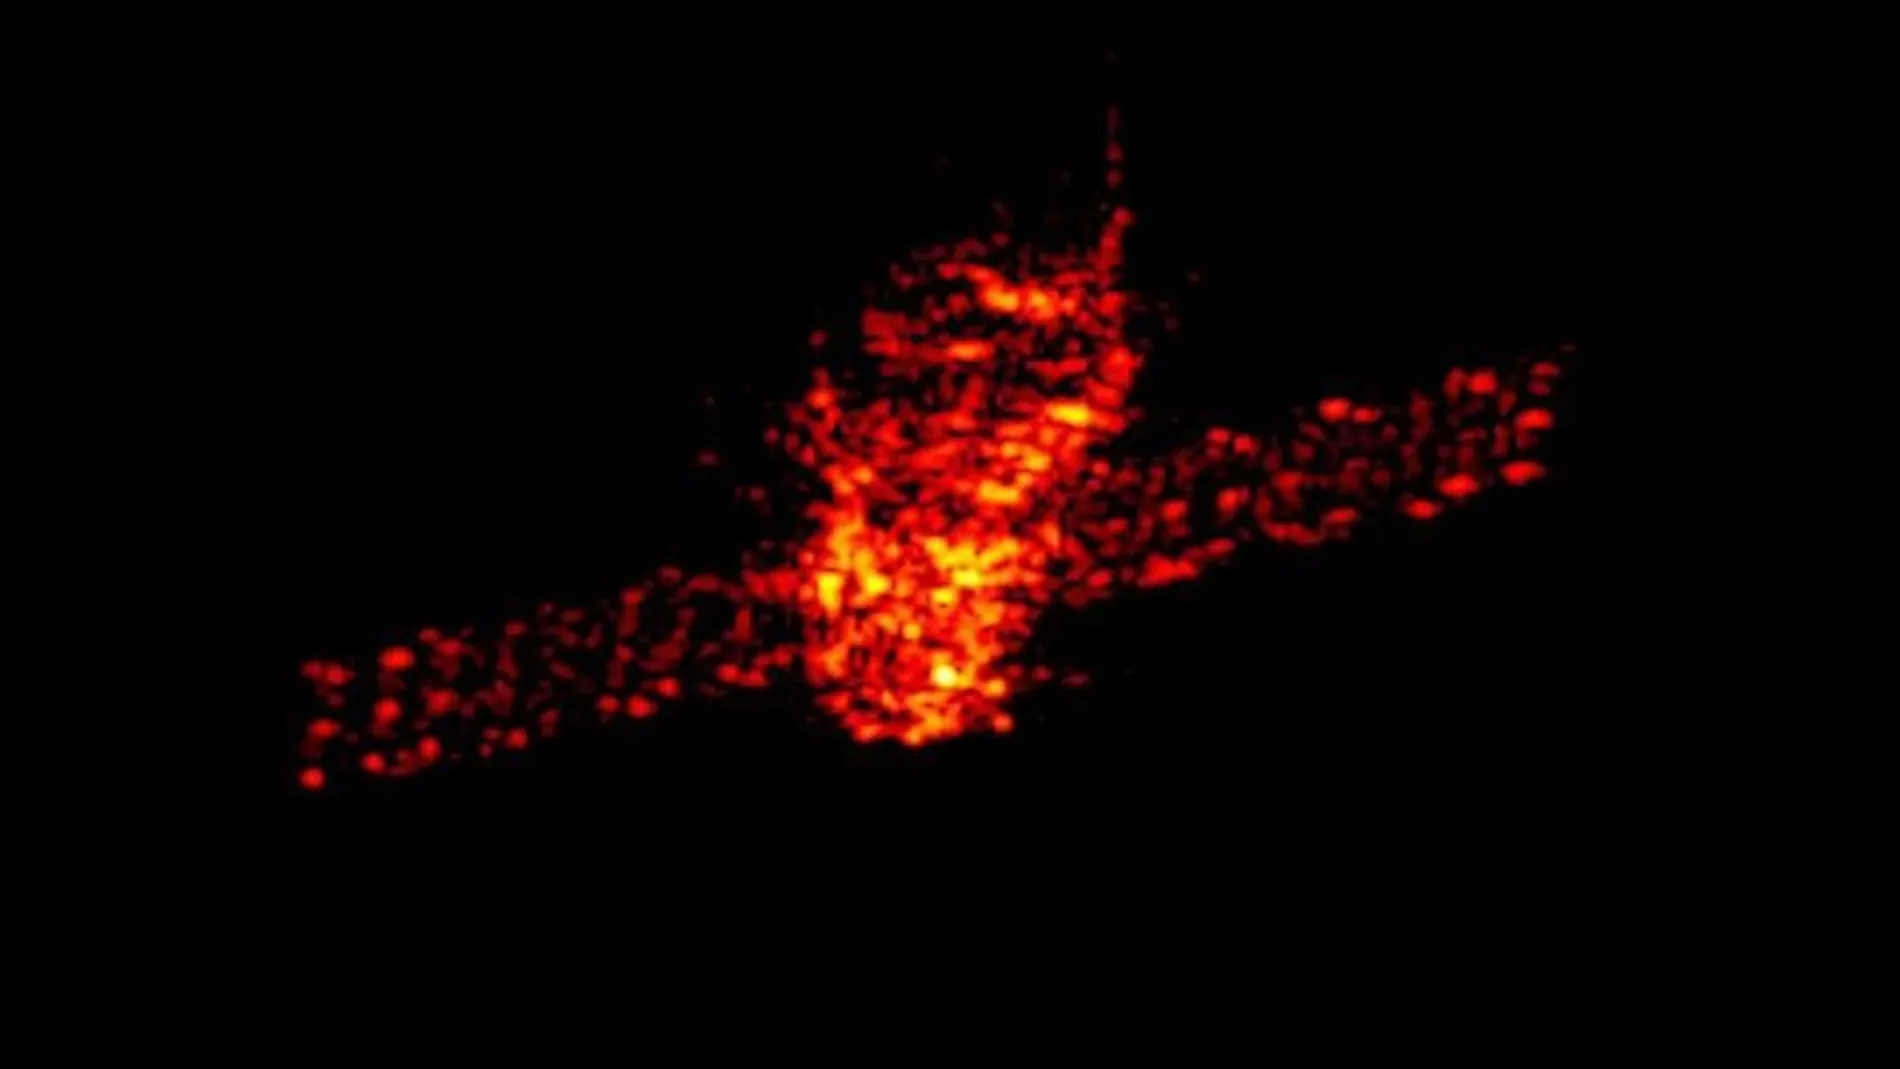 Una imagen tomada por radar de la estación espacial china Tiangong 1